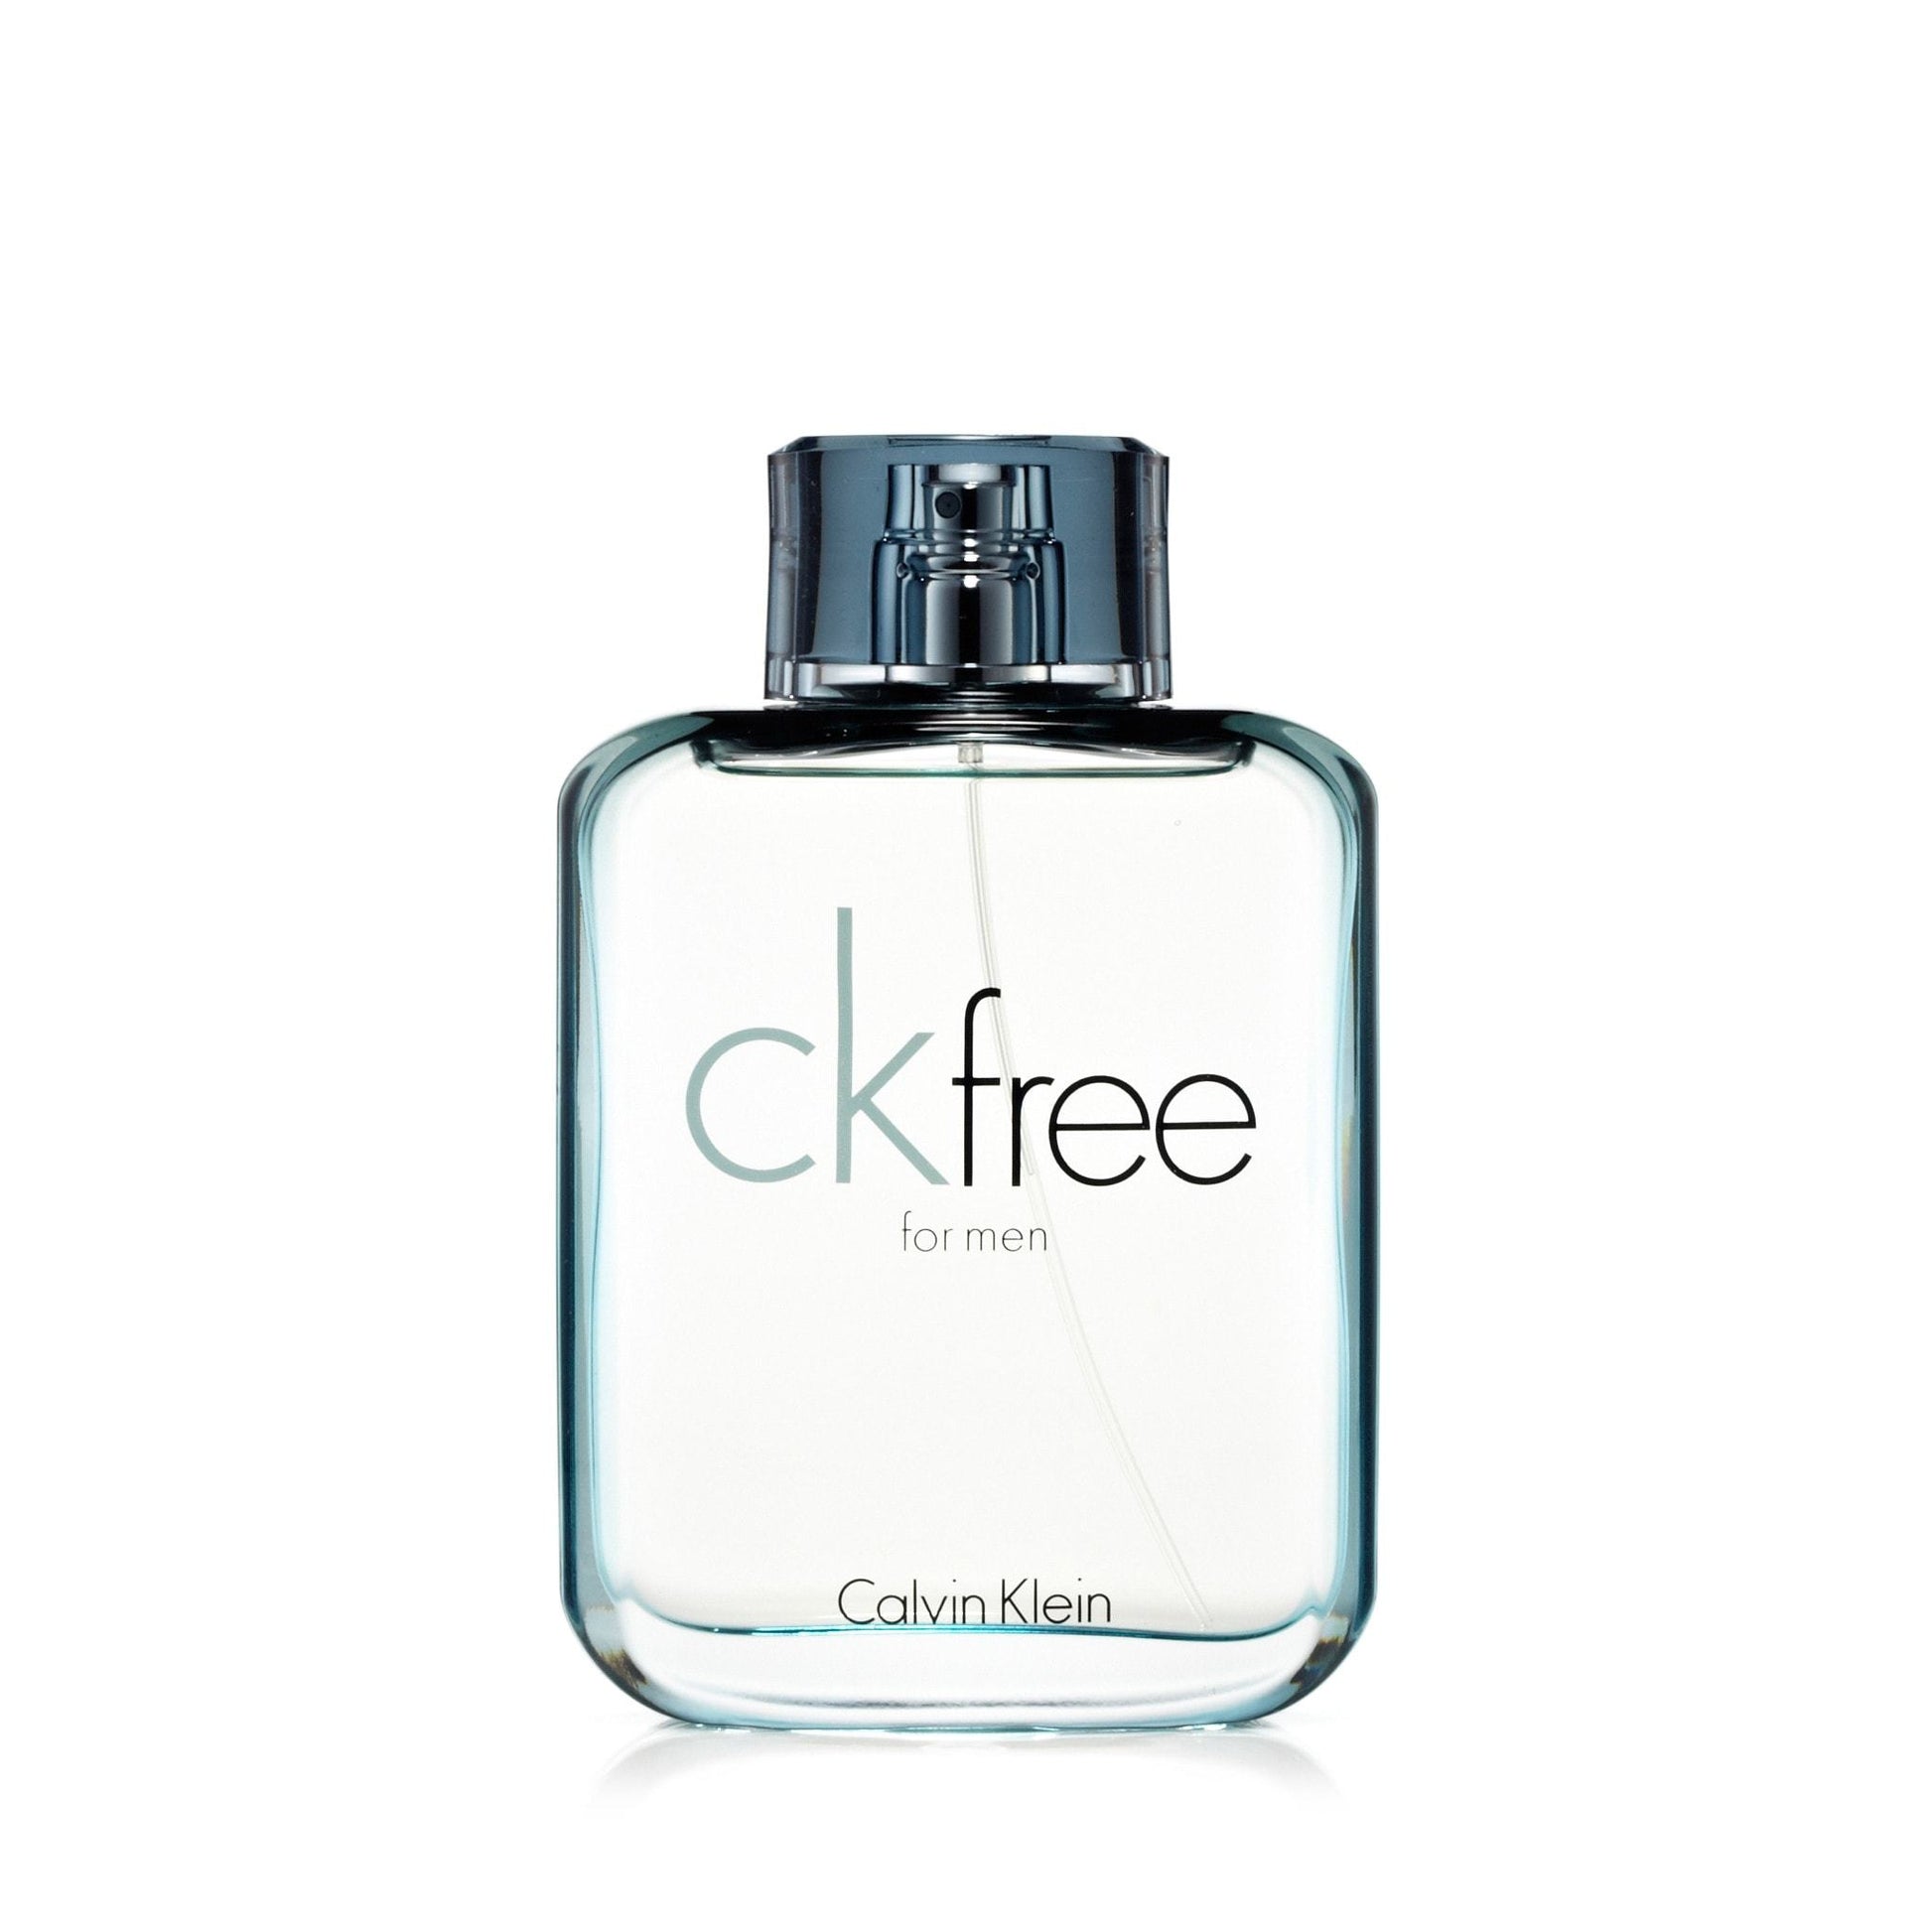 Free Eau de Toilette Spray for Men by Calvin Klein, Product image 2